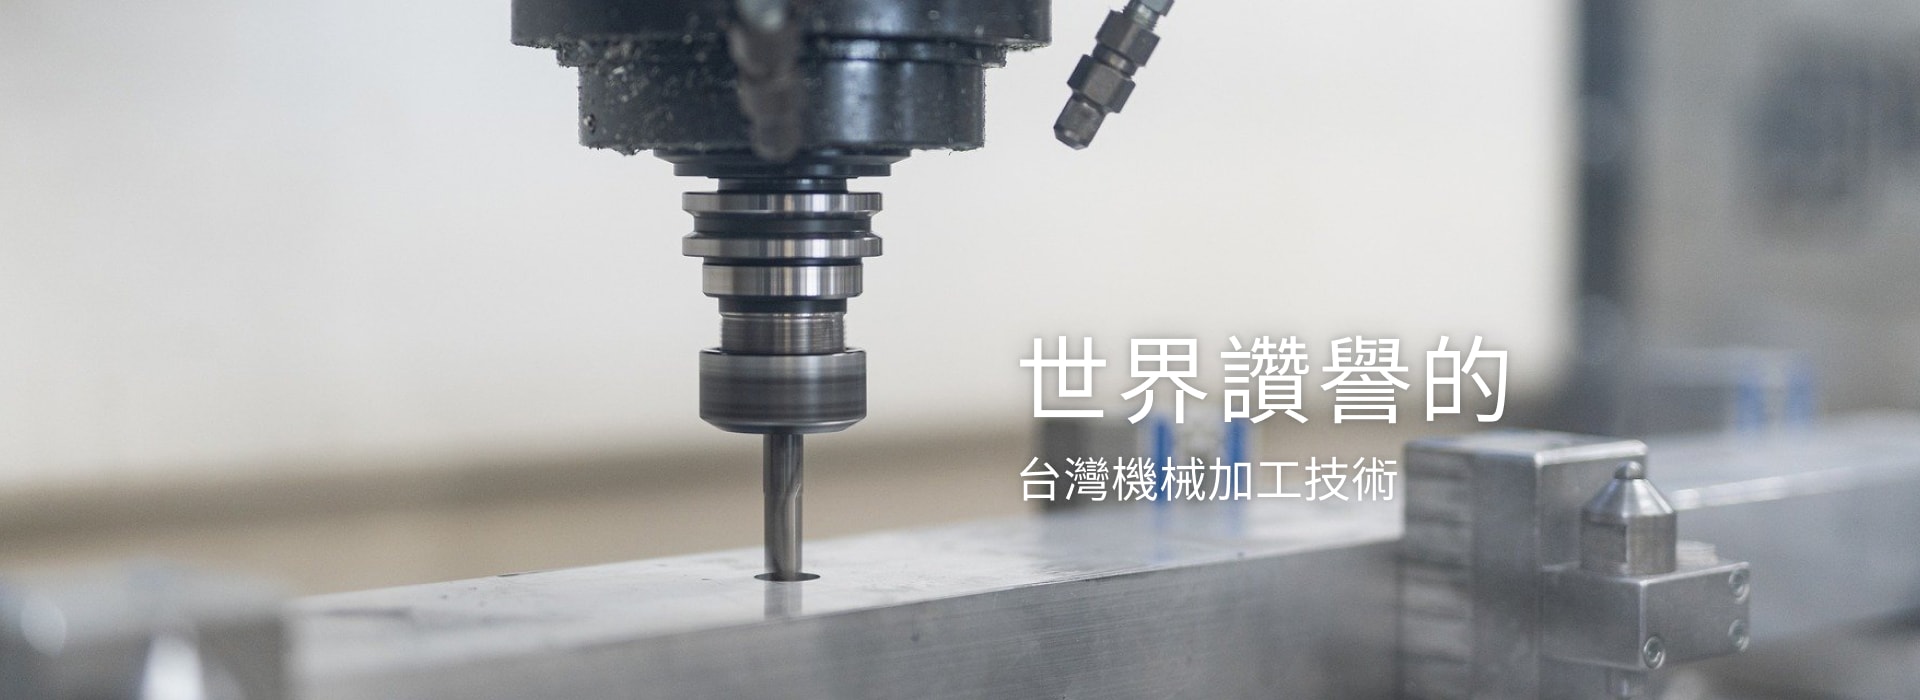 世界讚譽的台灣機械加工技術